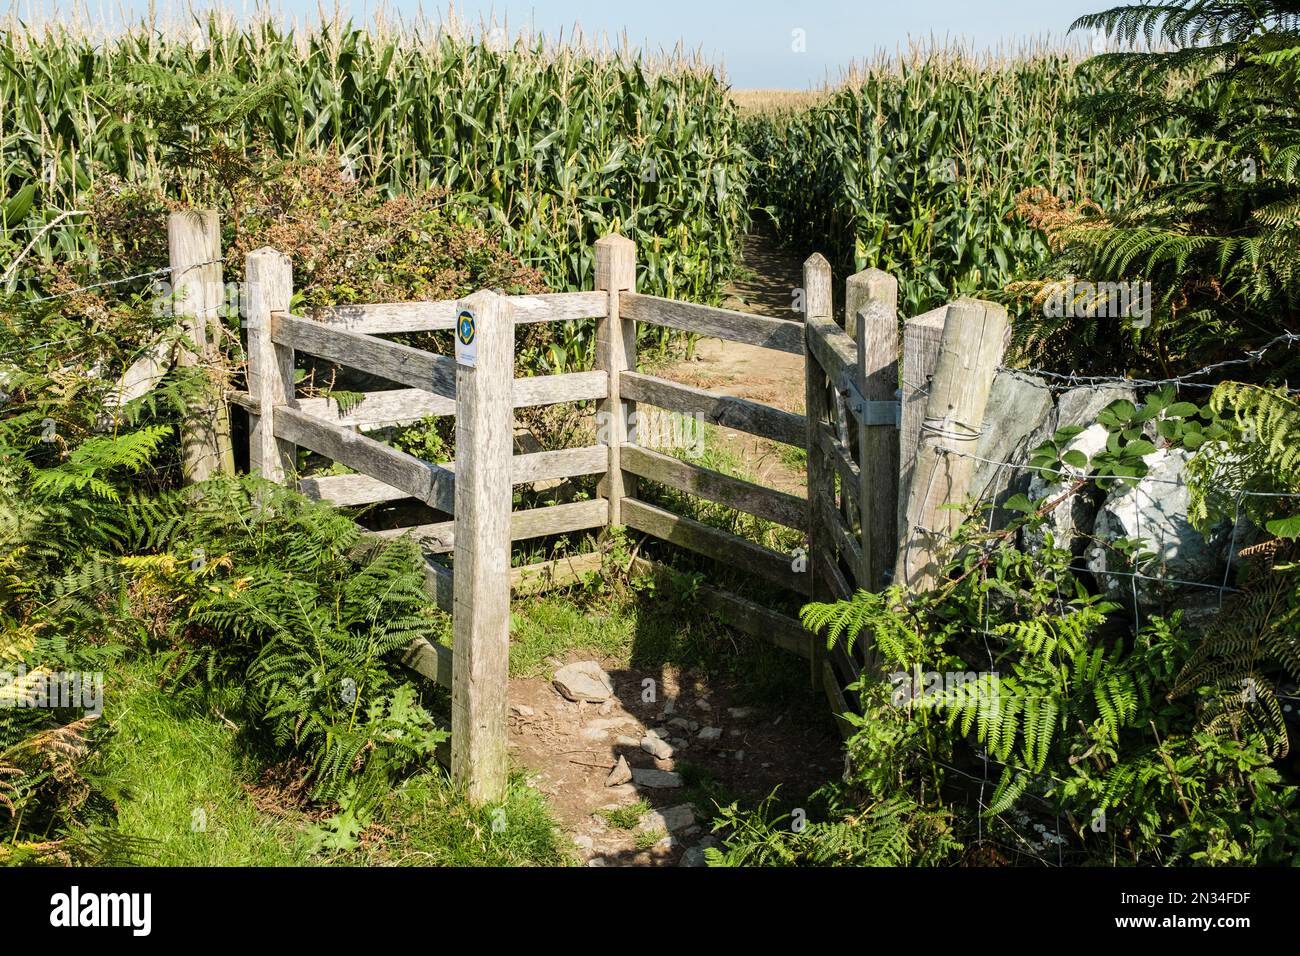 Porte de baiser et sentier public sur le chemin côtier à travers le champ de récolte de maïs. Llanfachraeth, île d'Anglesey, nord du pays de Galles, Royaume-Uni, Grande-Bretagne Banque D'Images